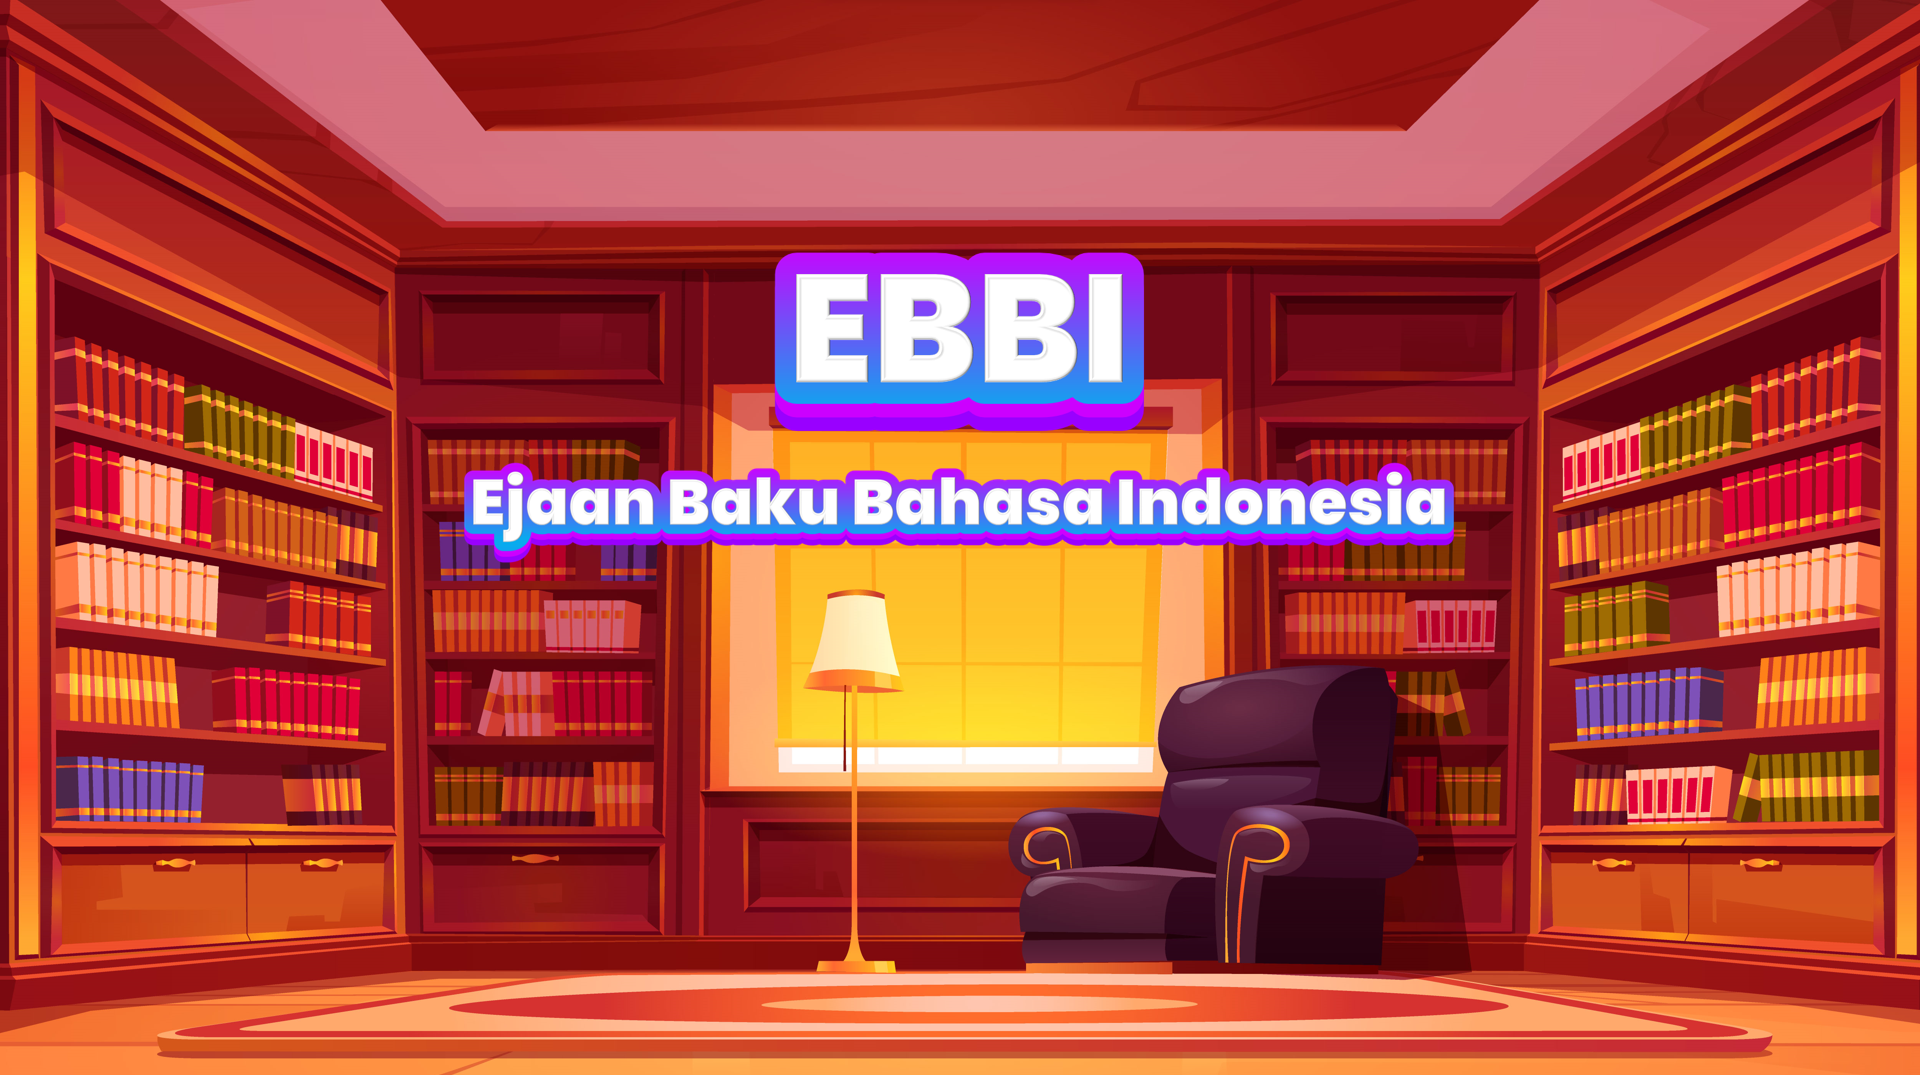 "EBBI" Ejaan Baku Bahasa Indonesia